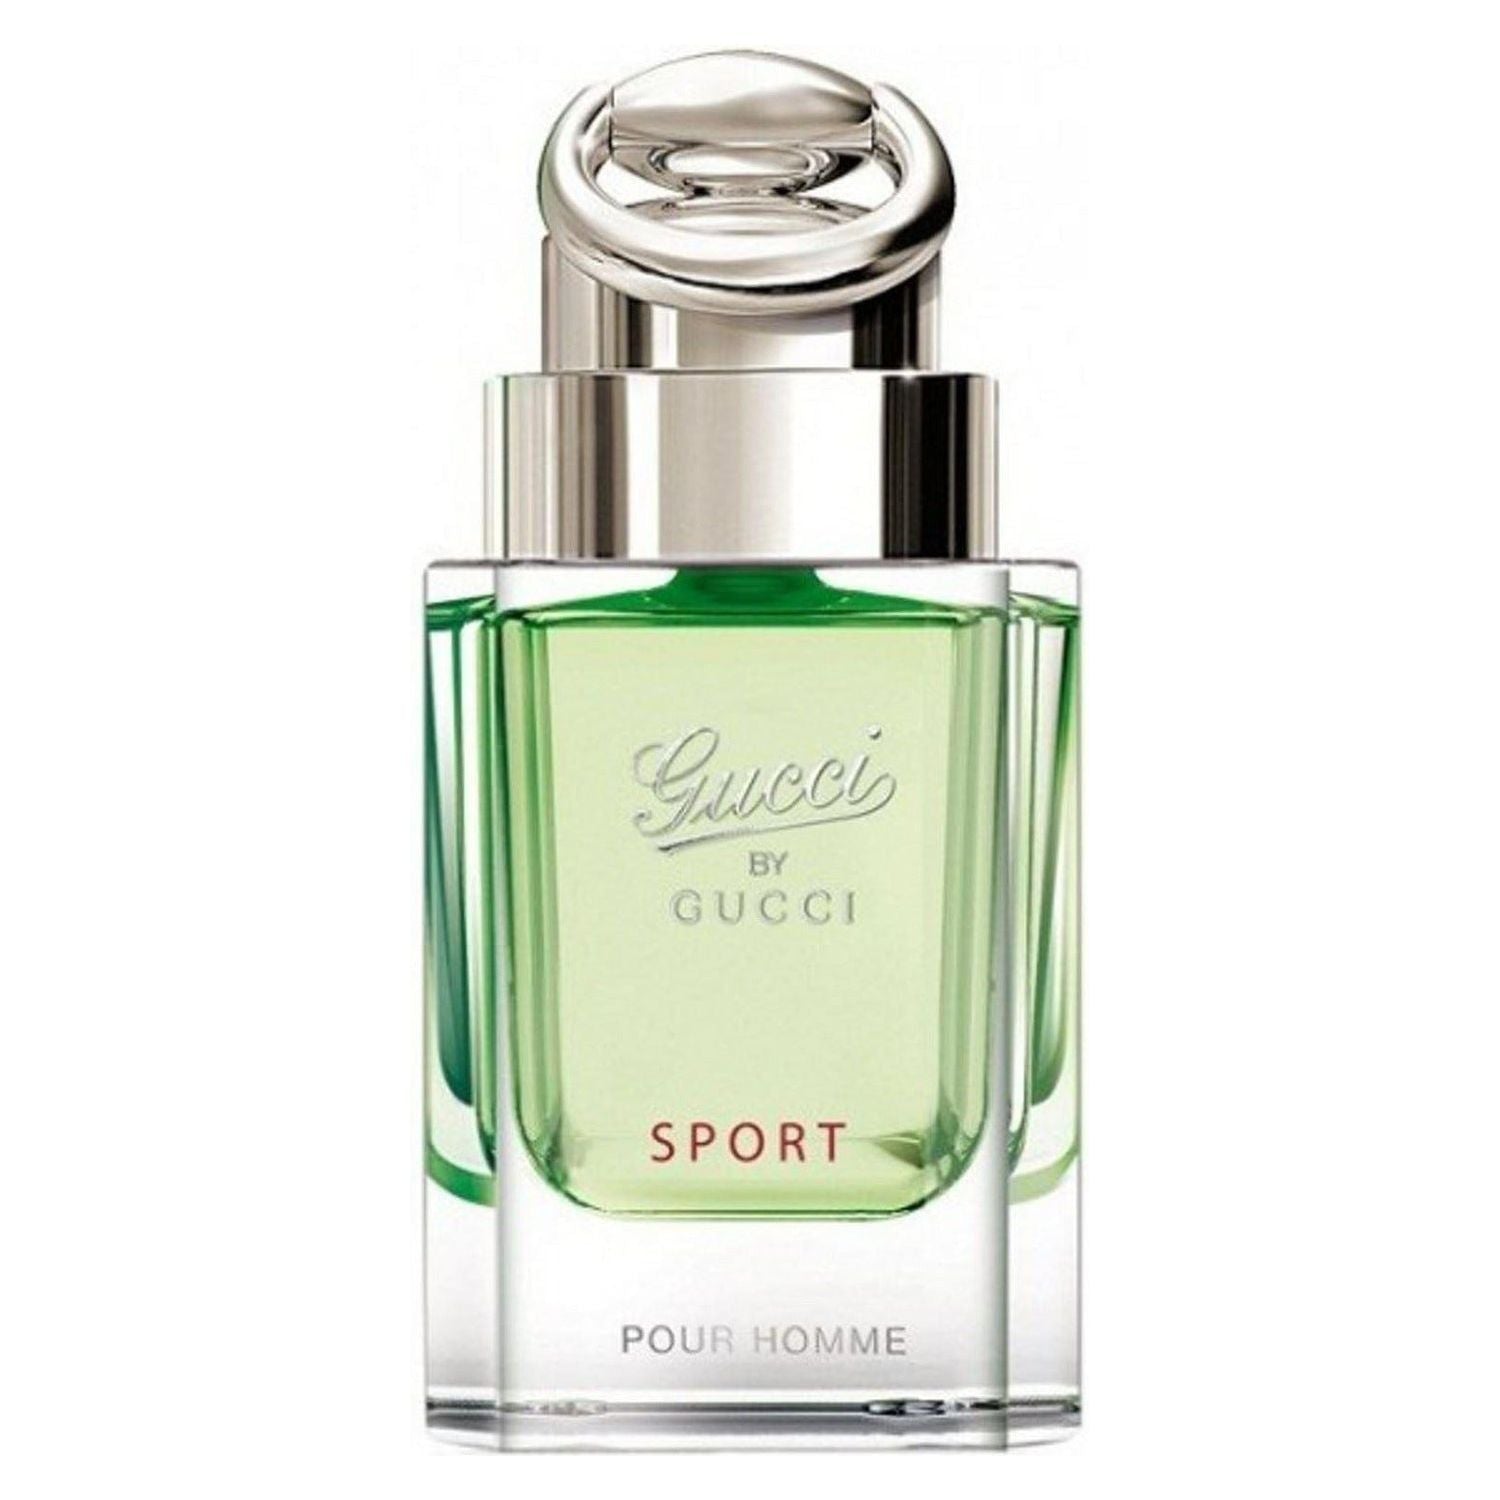 gucci sport perfume price